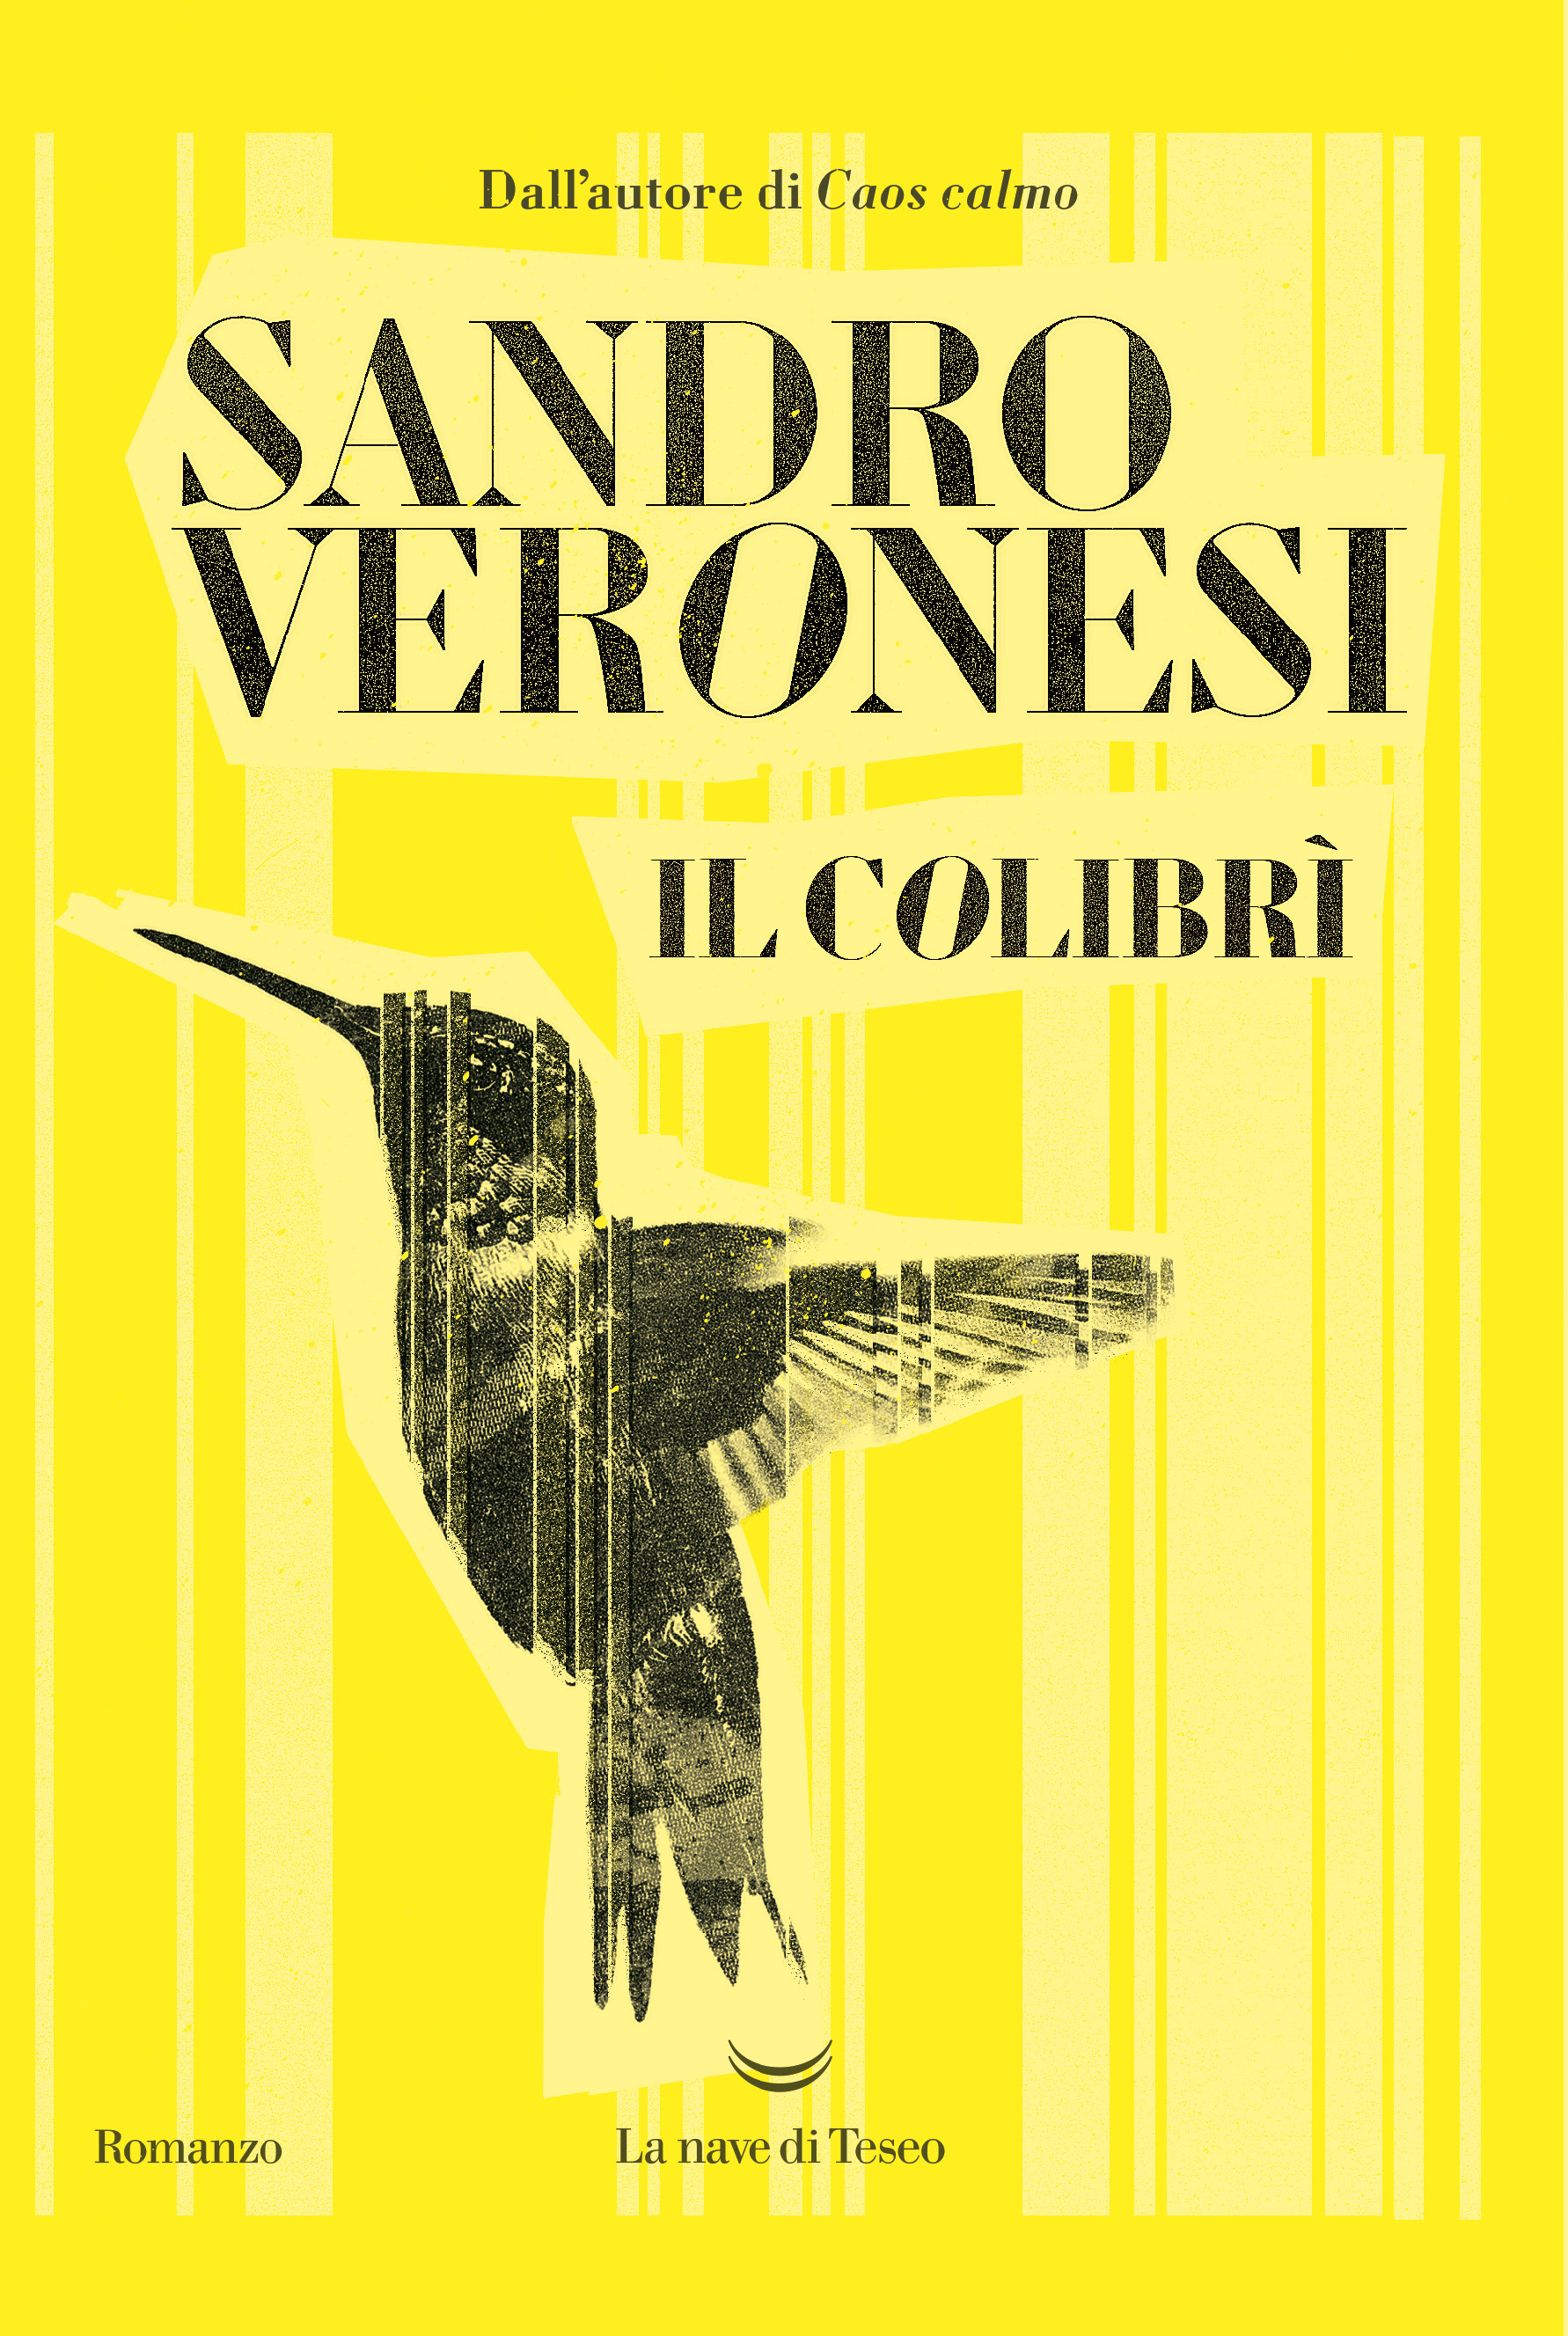 Il Colibrì di Sandro Veronesi (foto da comunicato)